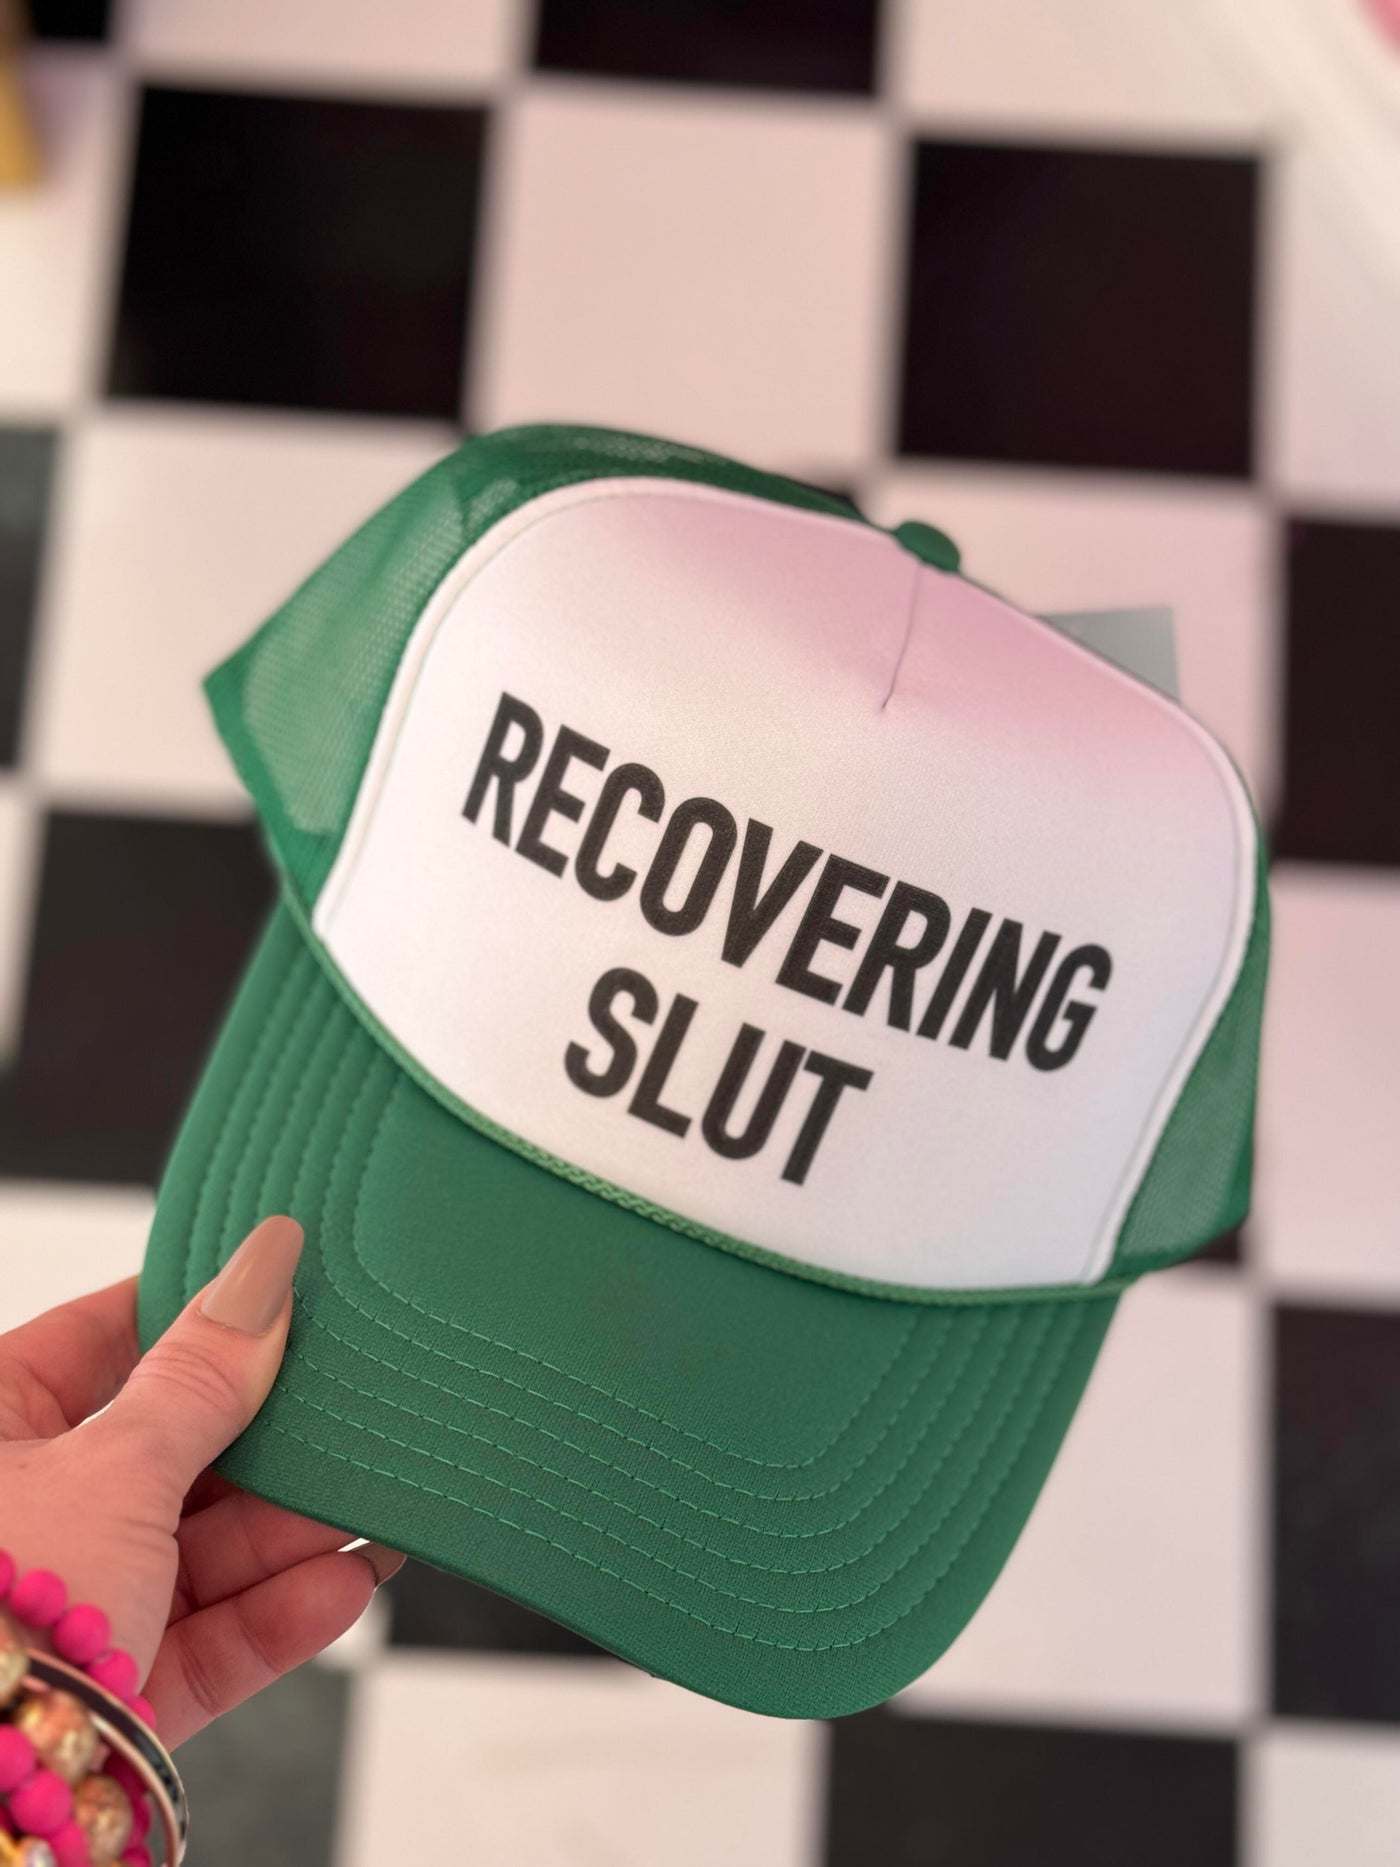 Recovering Slut Trucker Hat